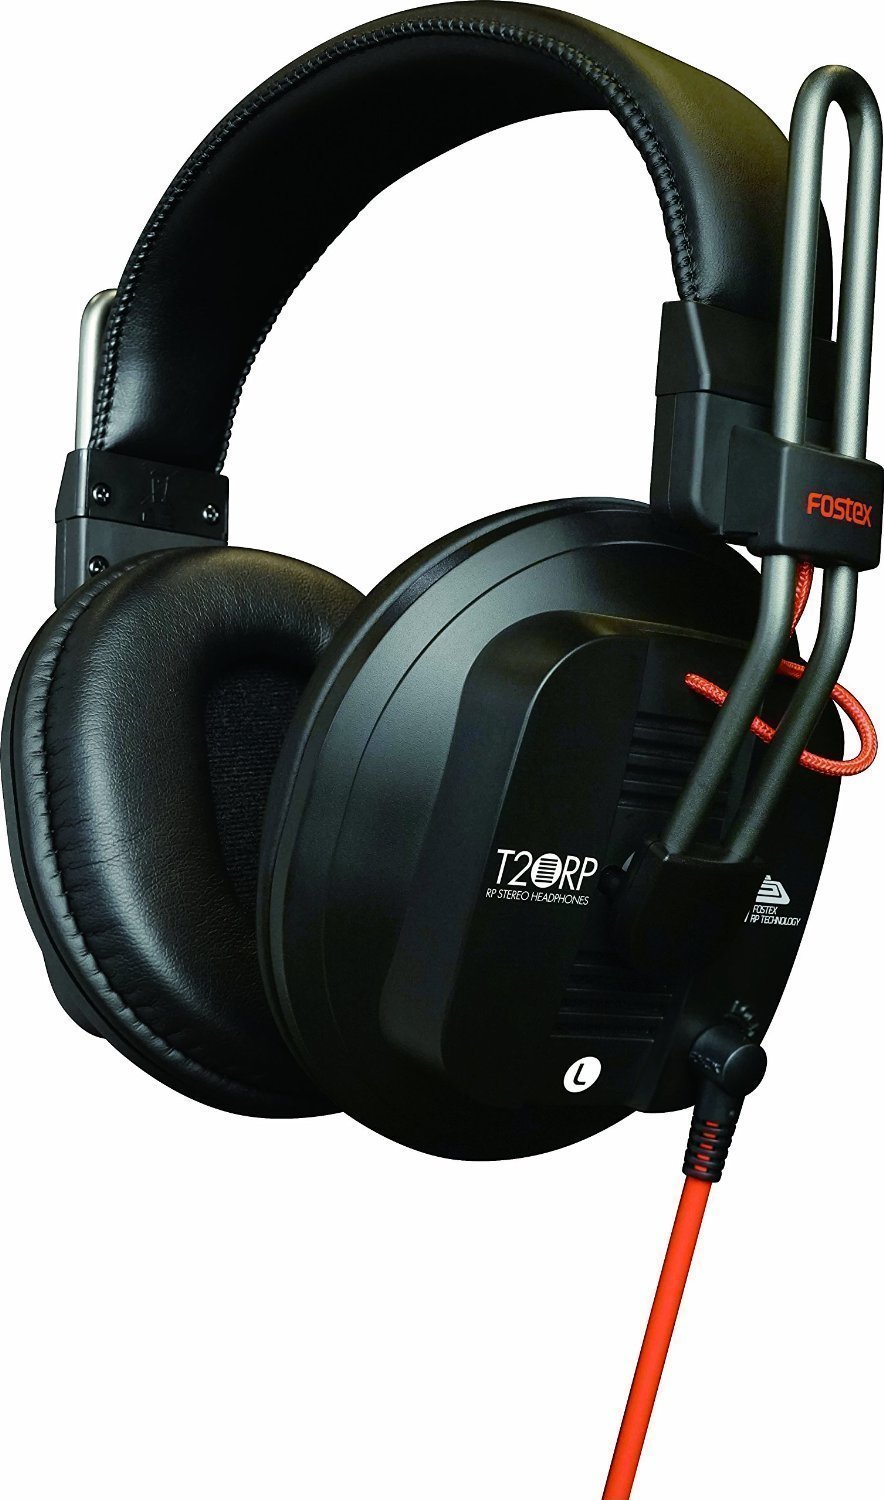 Studijske slušalice Fostex T20RP MK3